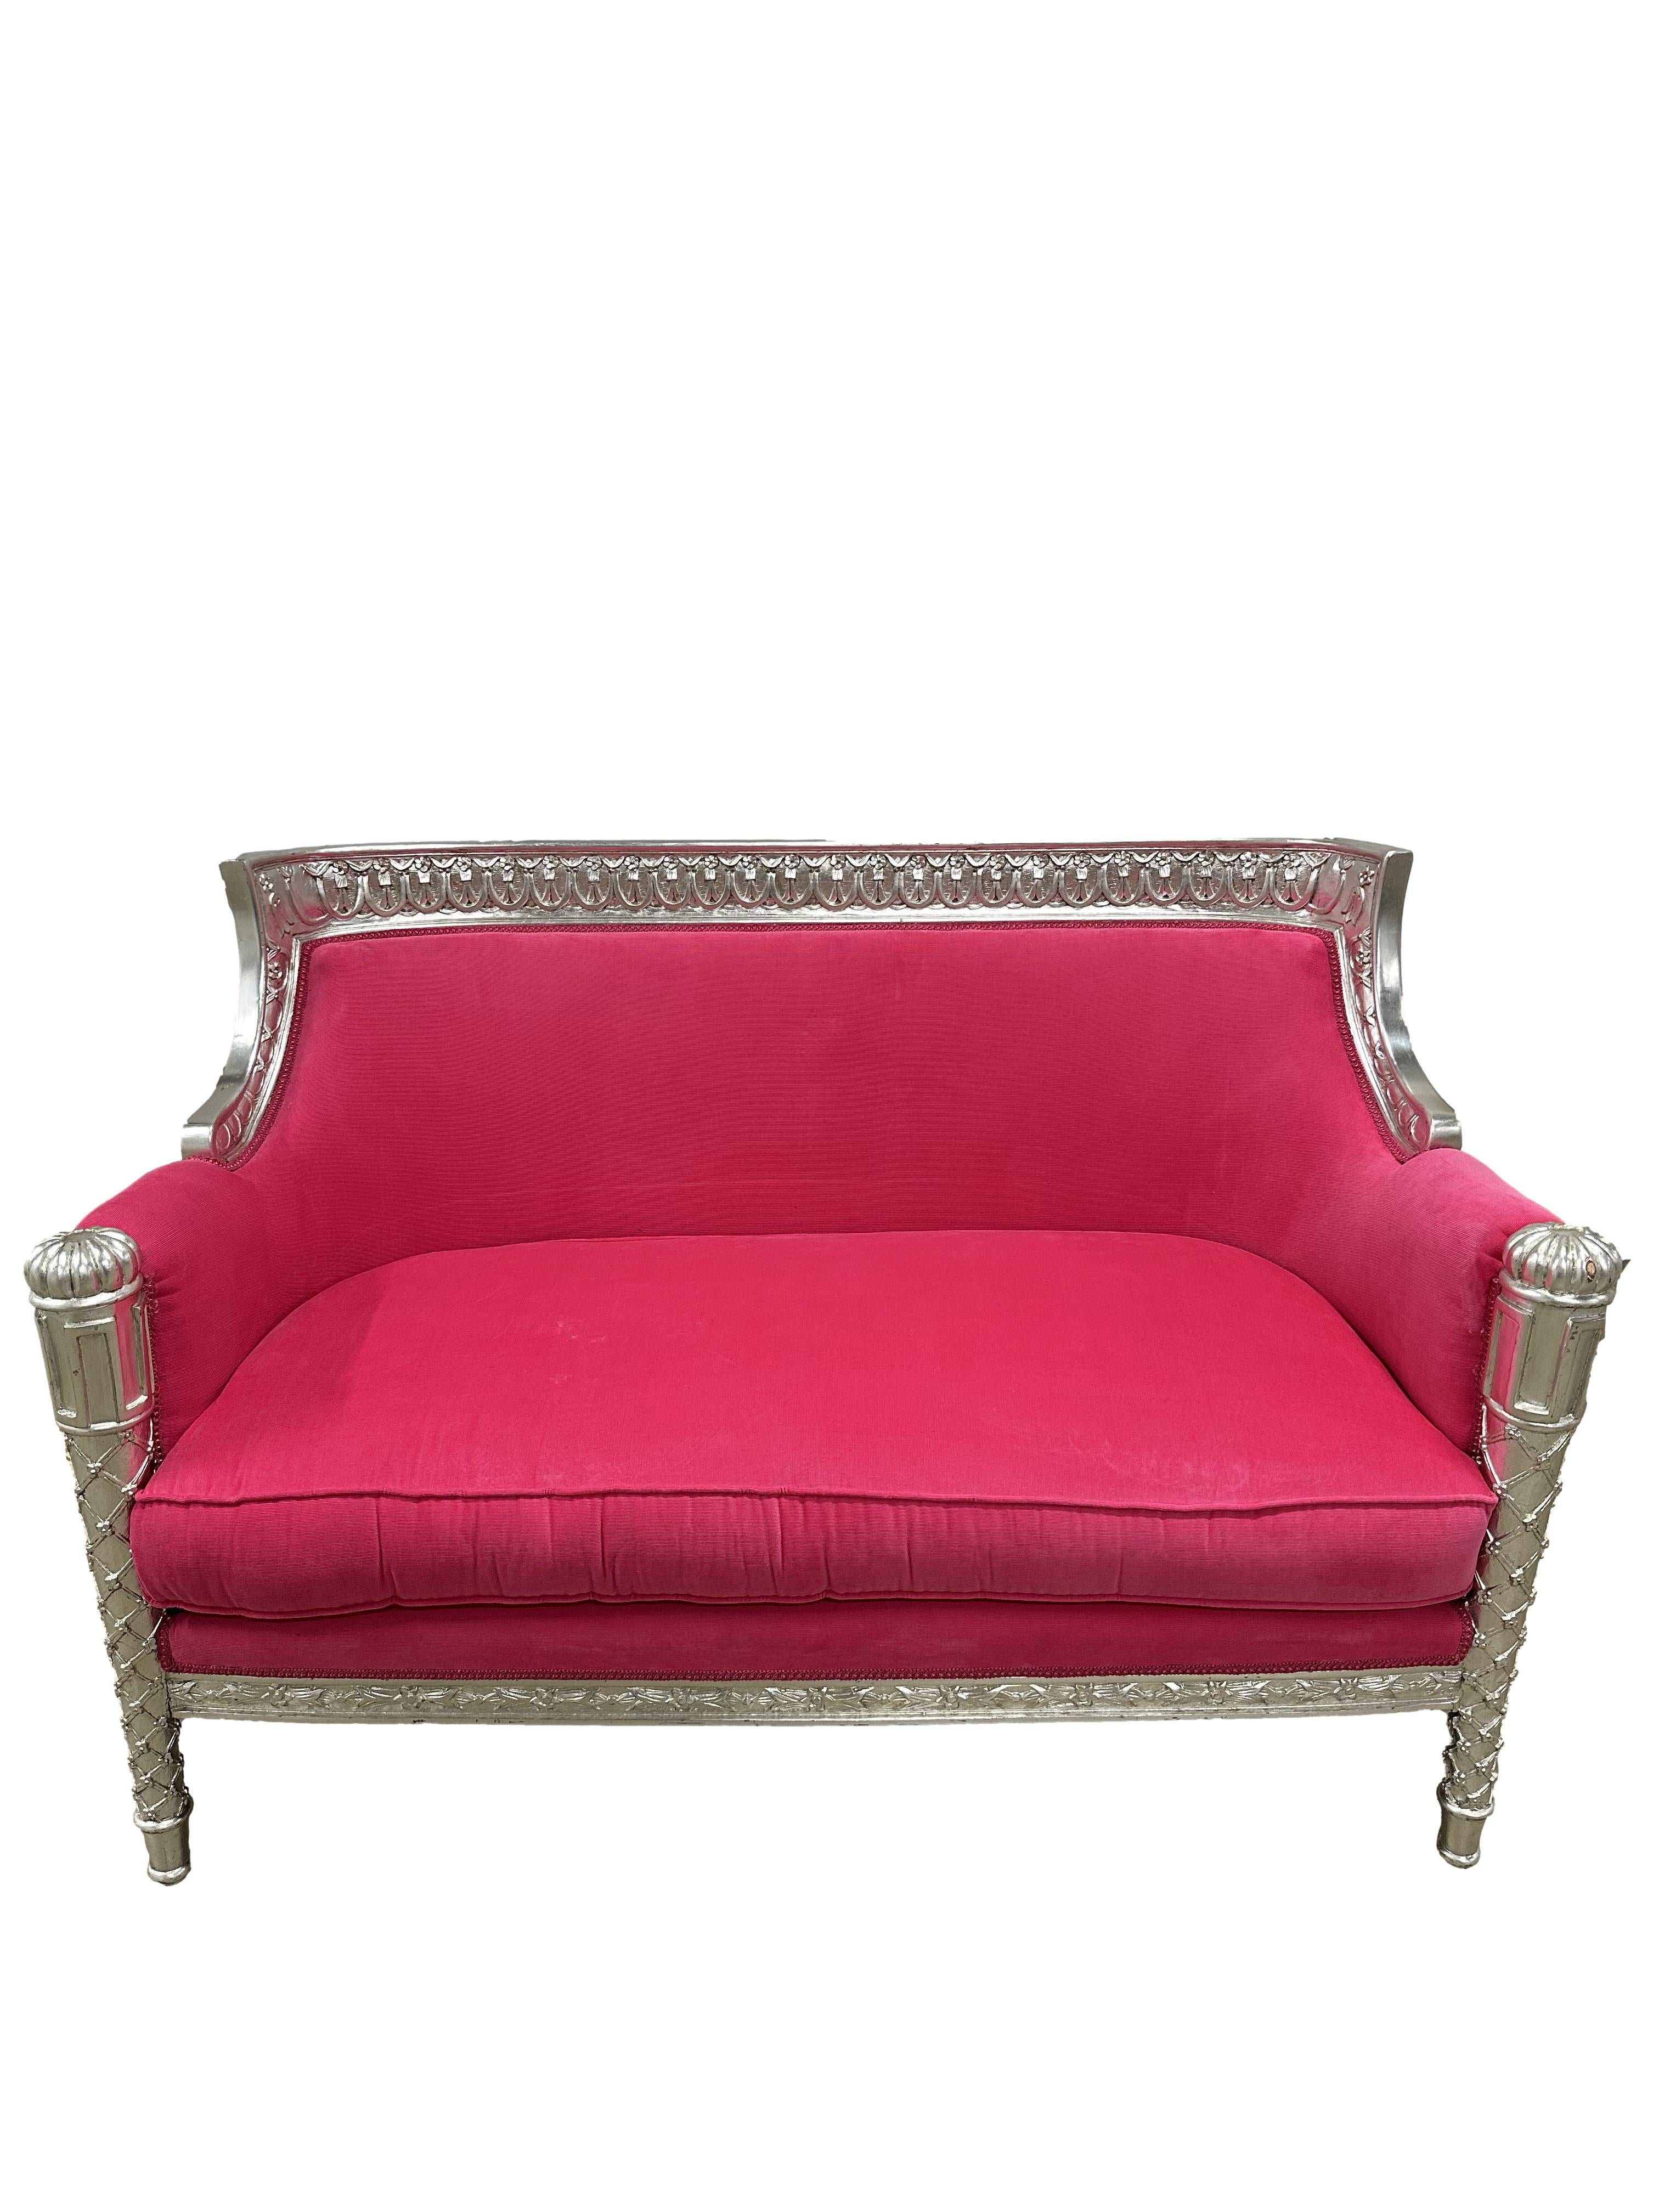 Erhöhen Sie Ihren Wohnbereich mit der erhabenen Schönheit unseres Anglo-Indischen Sofas, einem wahren Zeugnis sorgfältiger Handwerkskunst und zeitlosen Designs. 

1. **Epoche-inspiriertes Design:** Inspiriert von der Kolonialzeit, ist dieses Sofa